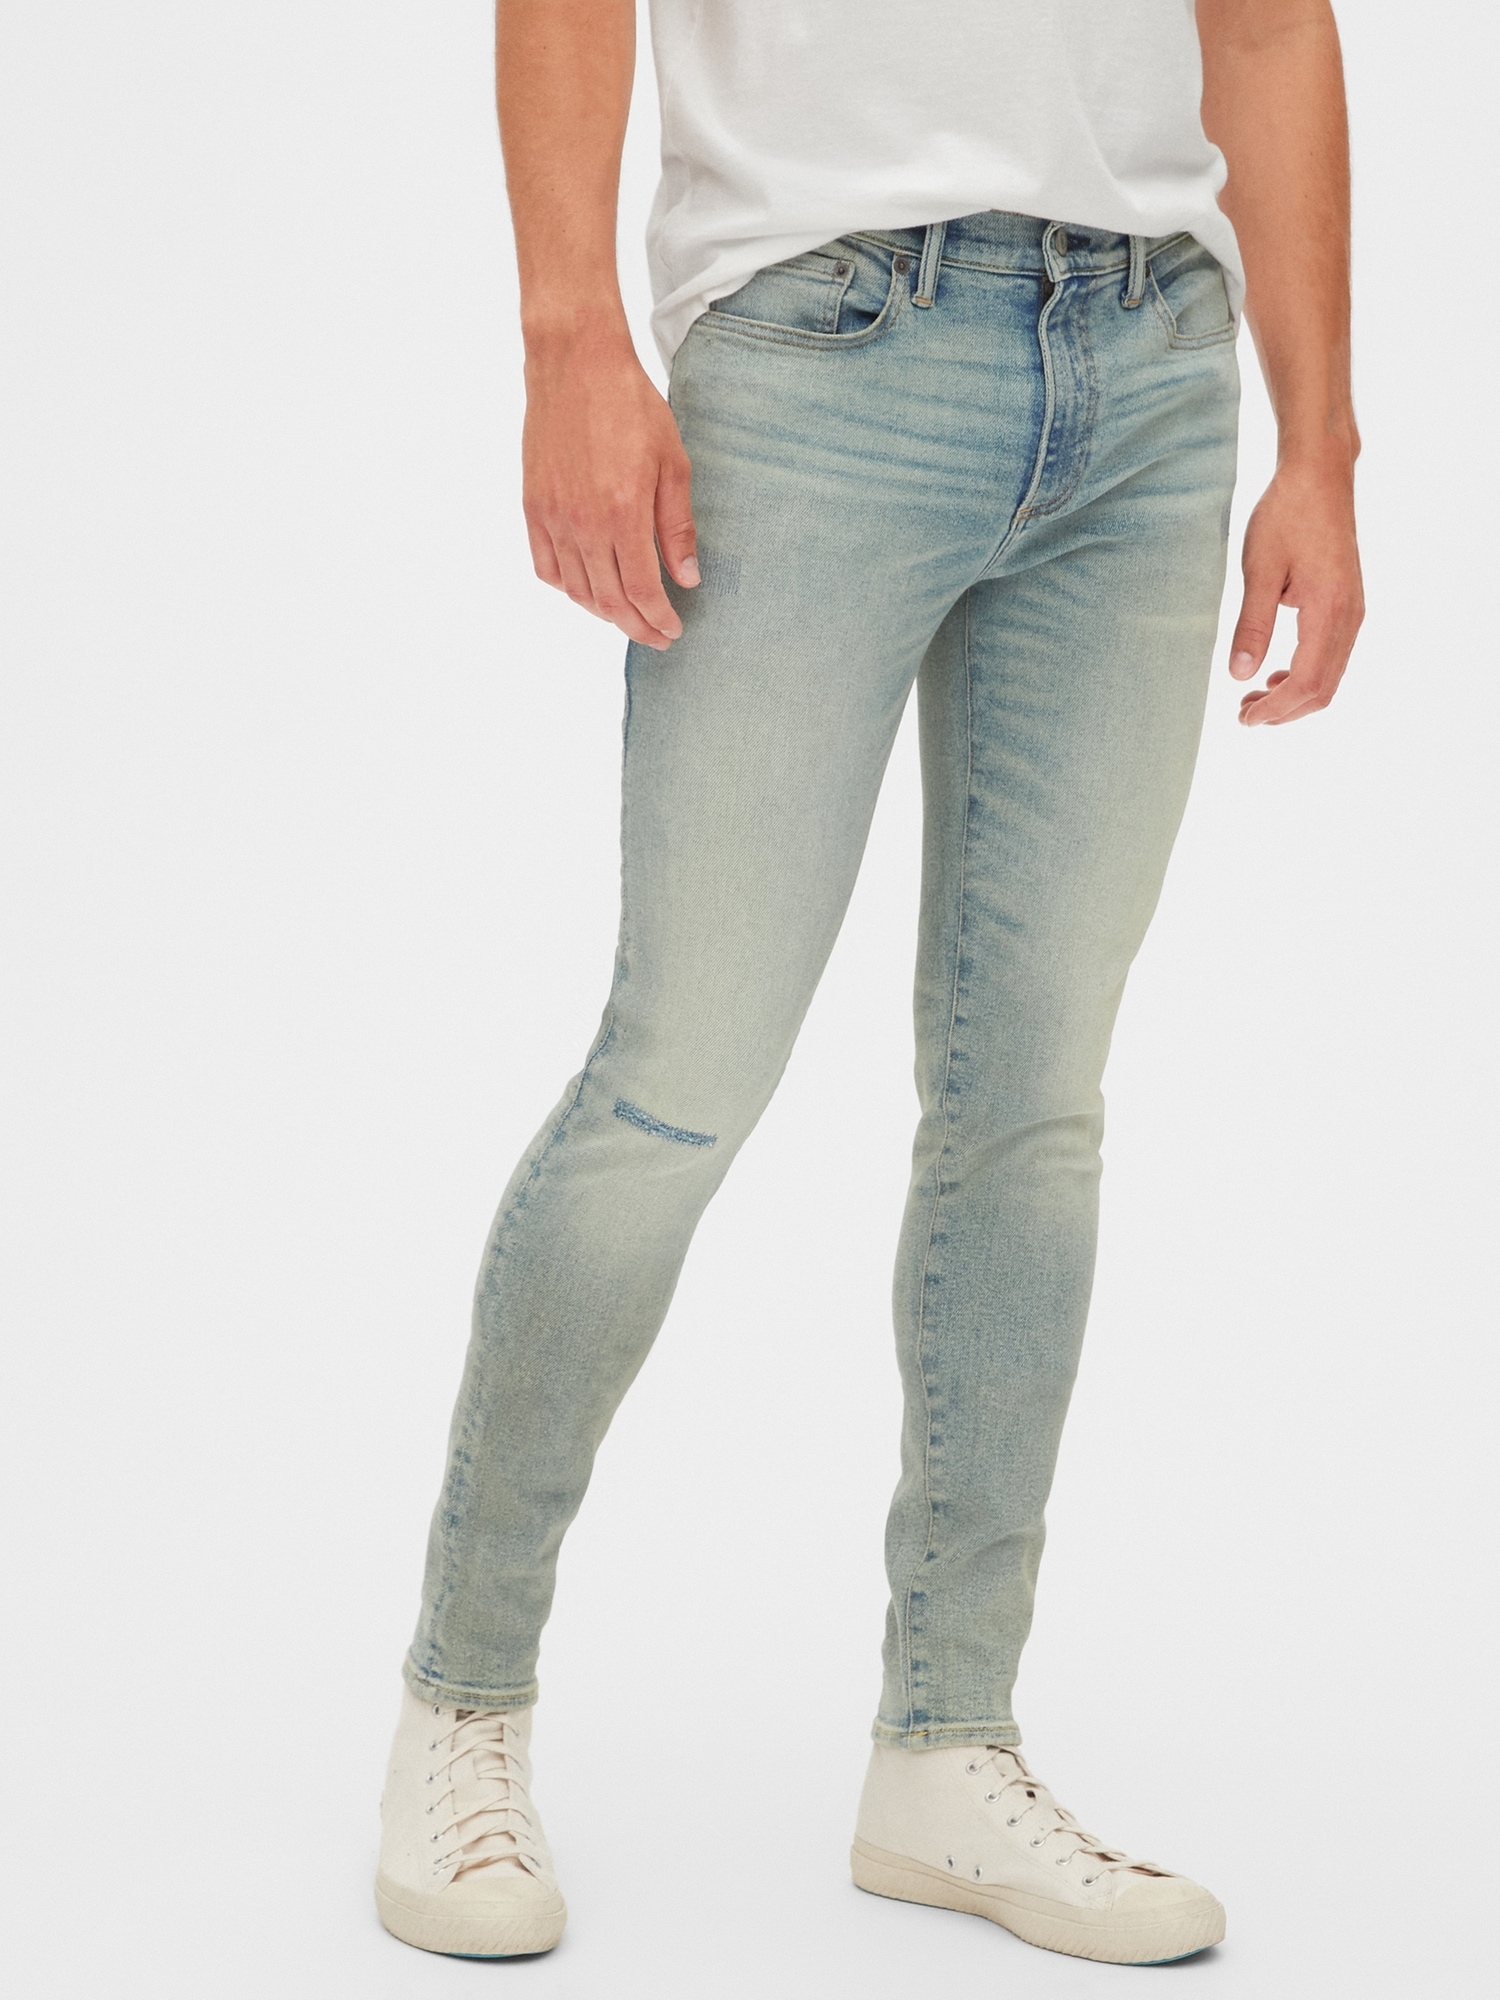 gap super skinny jeans mens